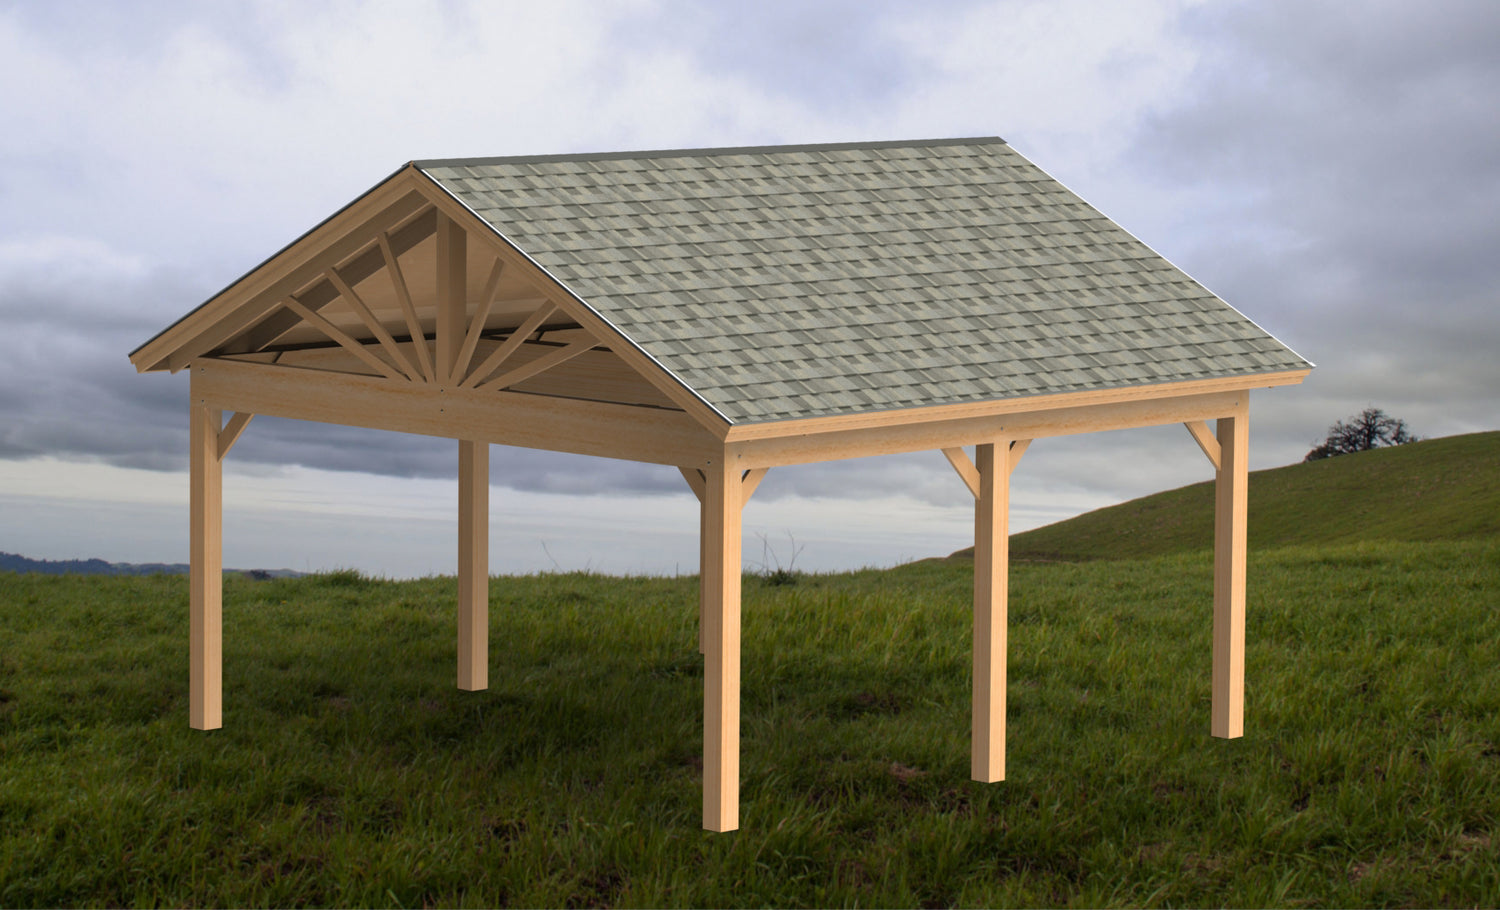 Outdoor Structure Plans - Pavilion Plans